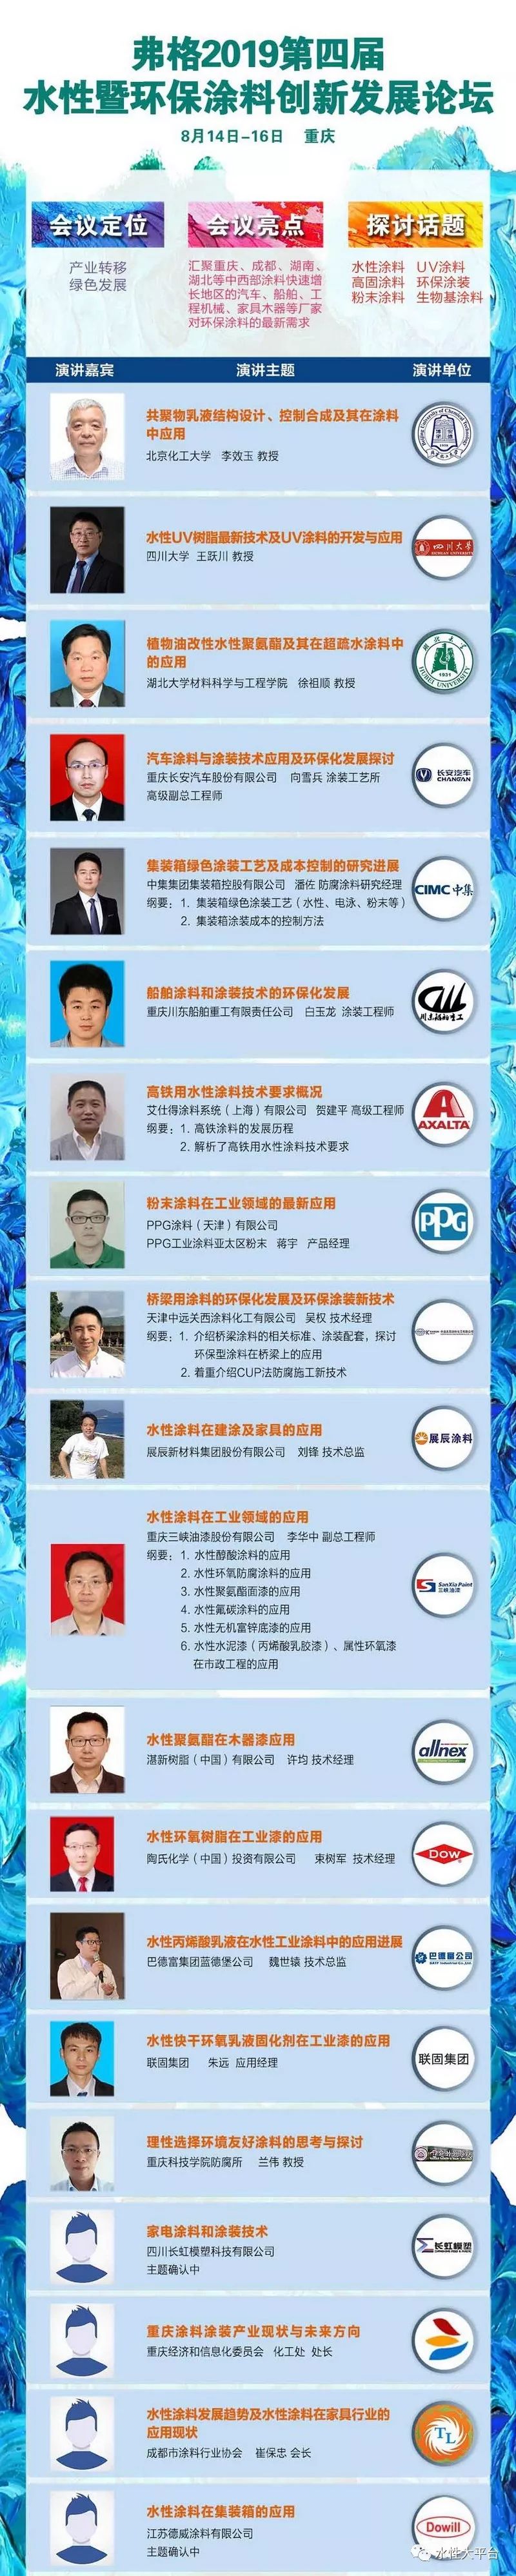 南京涂料企业排名_南京玻璃企业排名_四川涂料企业排名